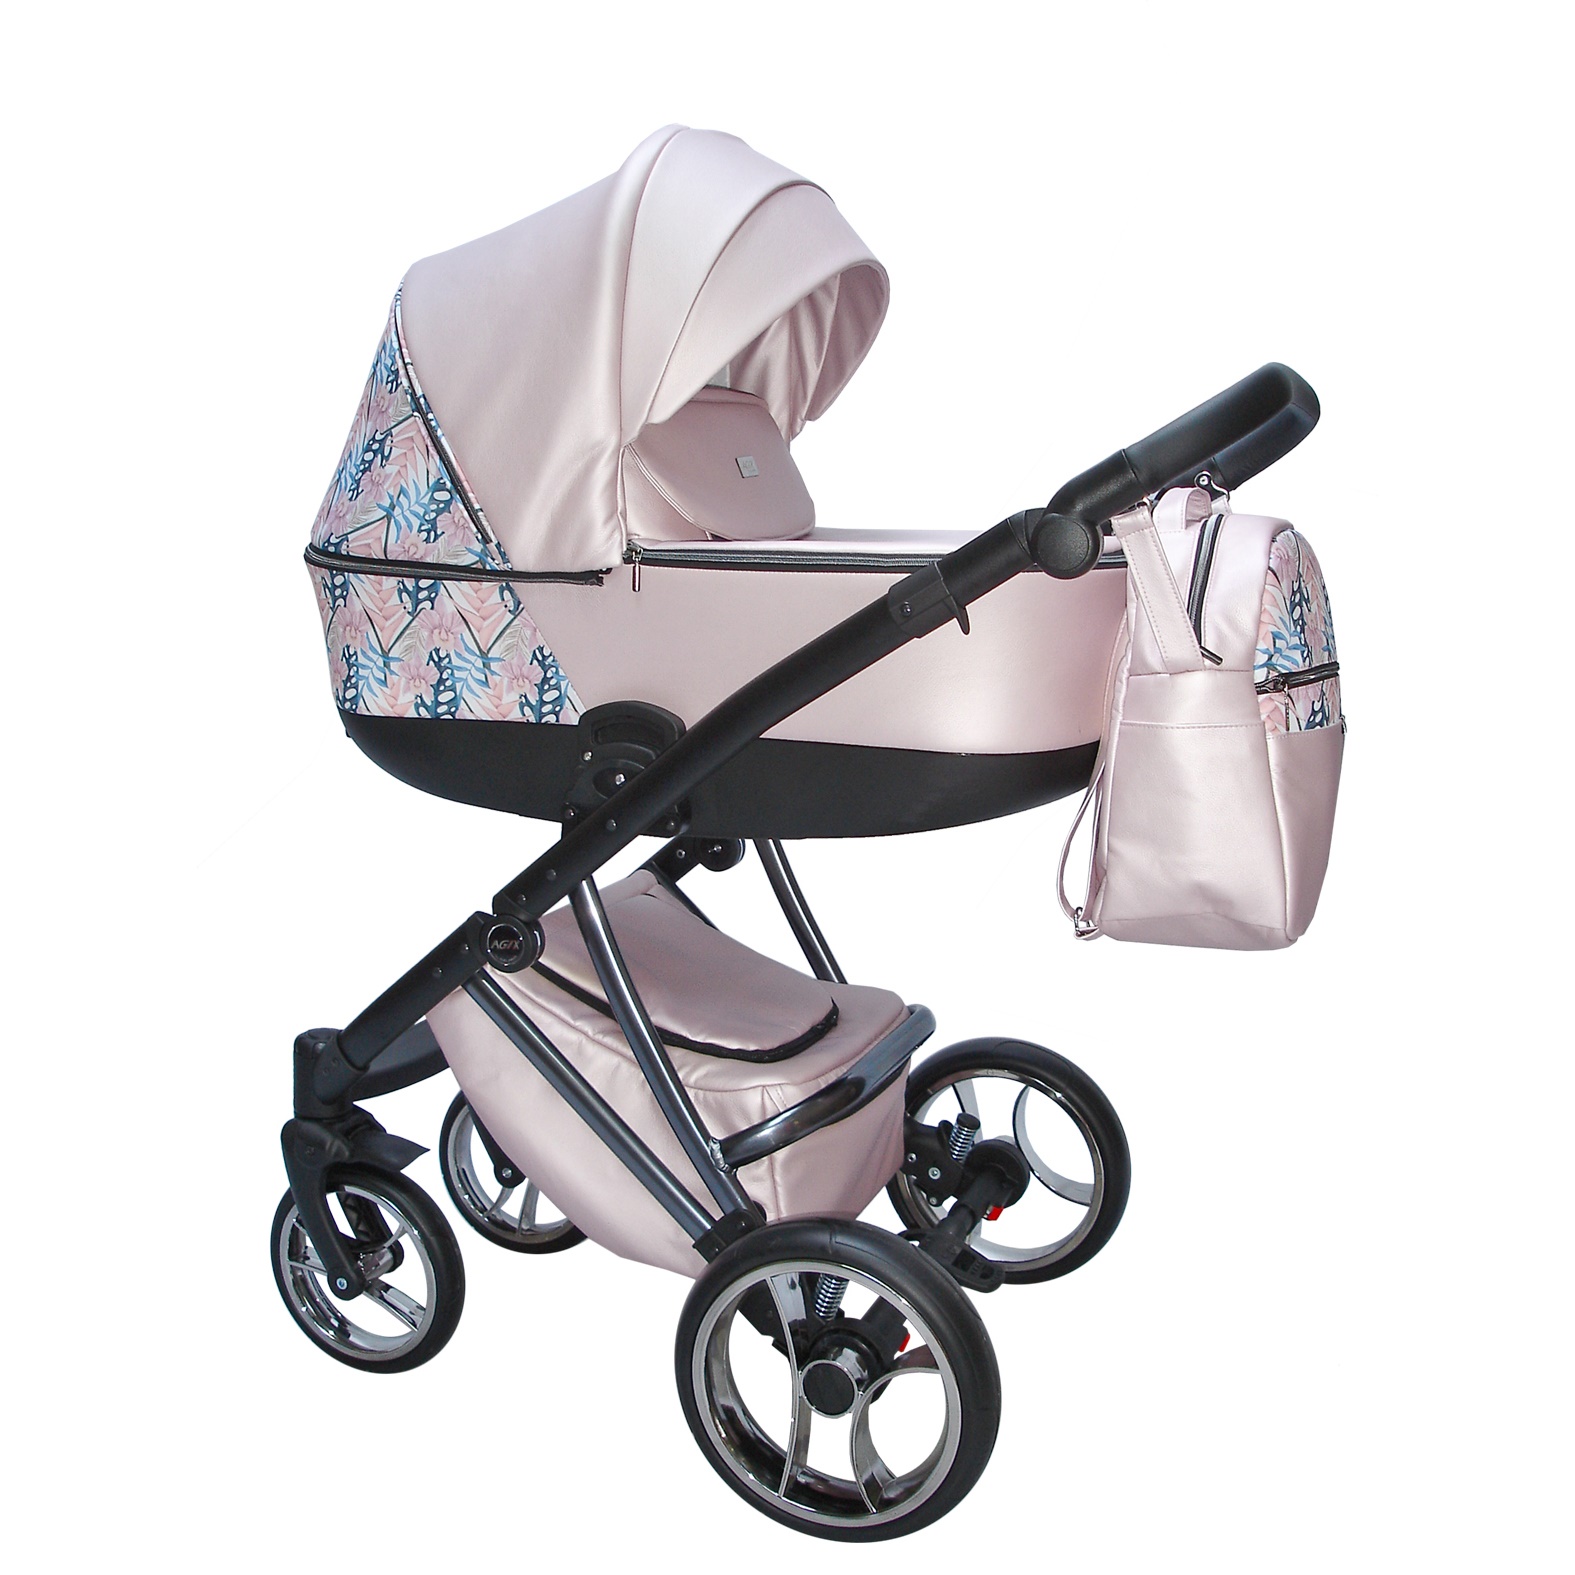 Carro de bebé rosa y gris - Agix - El mimo de mama